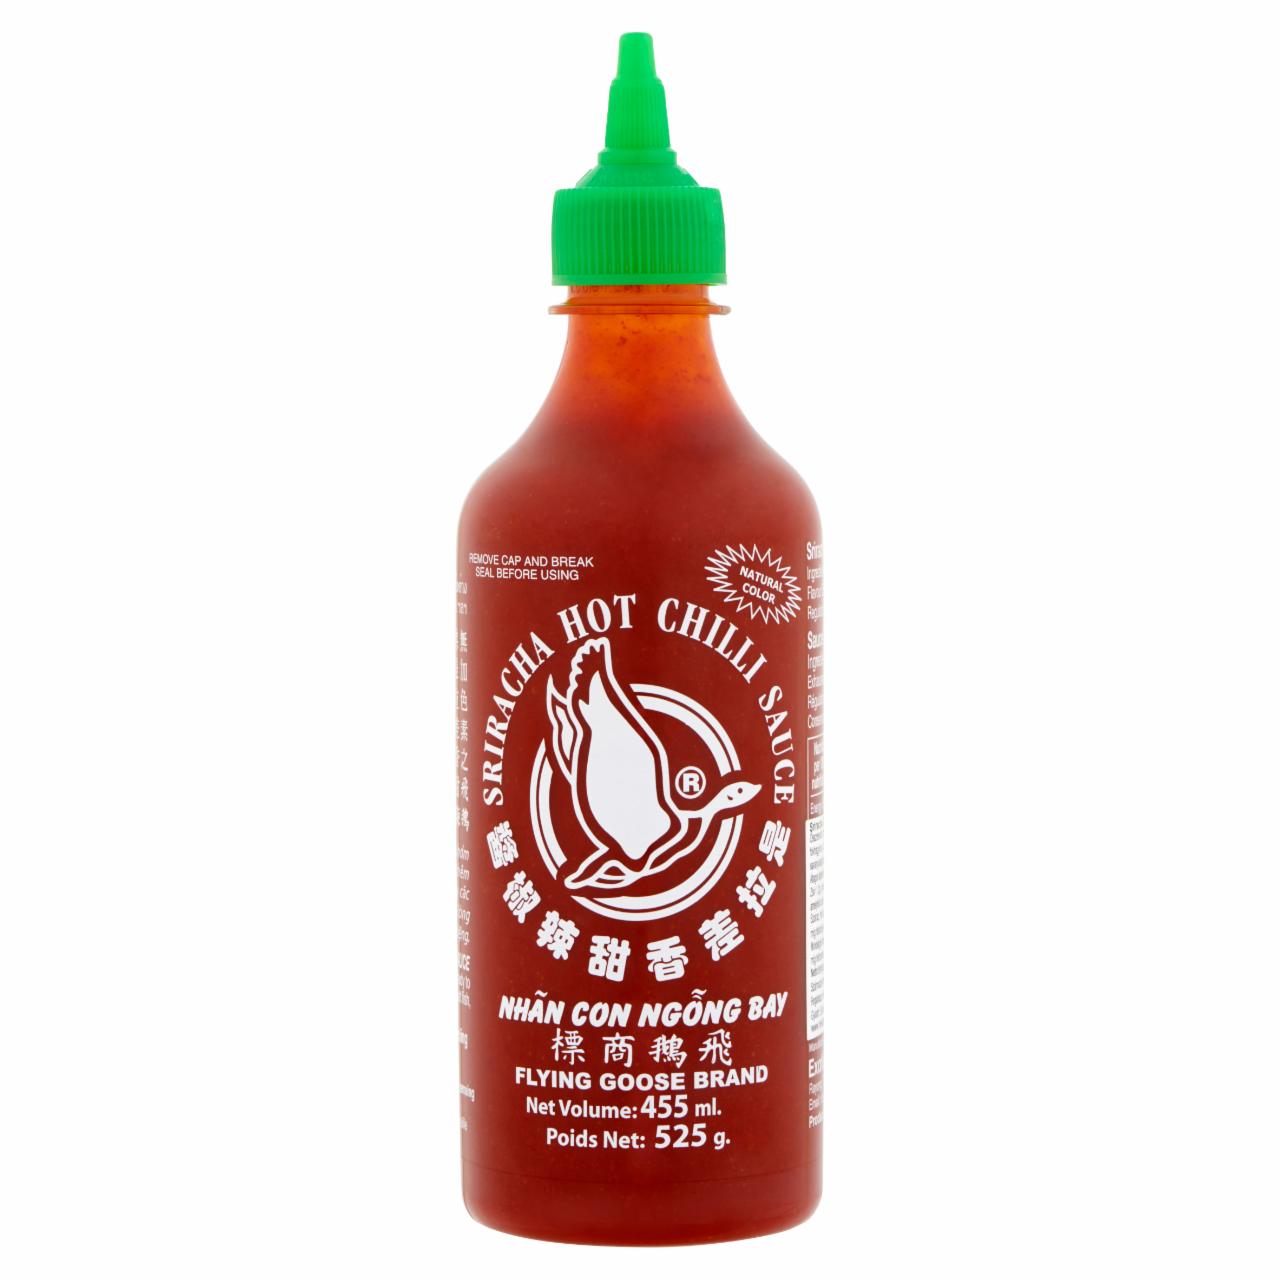 Képek - Sriracha csípős chili szósz 455 ml